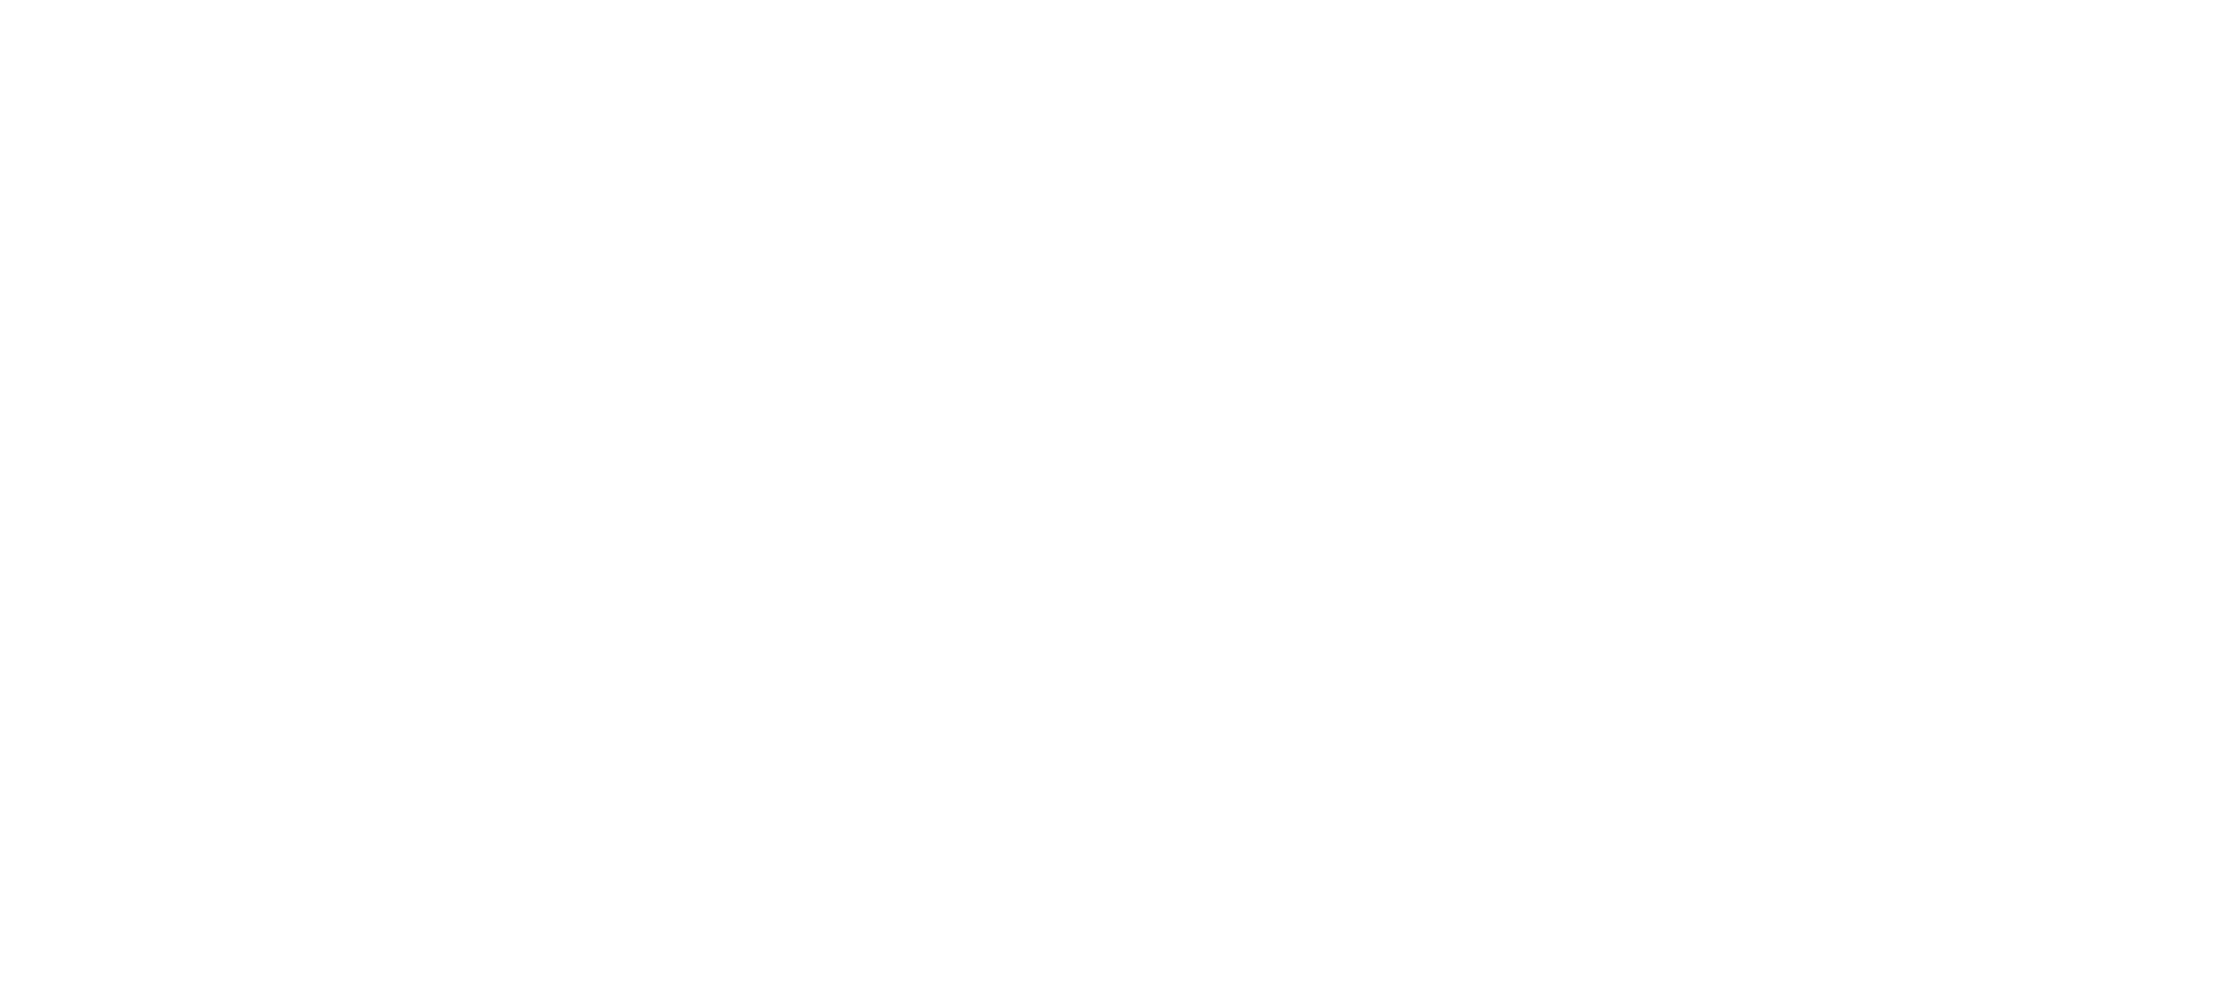 Jednoduché logo spoločnosti Loxone.